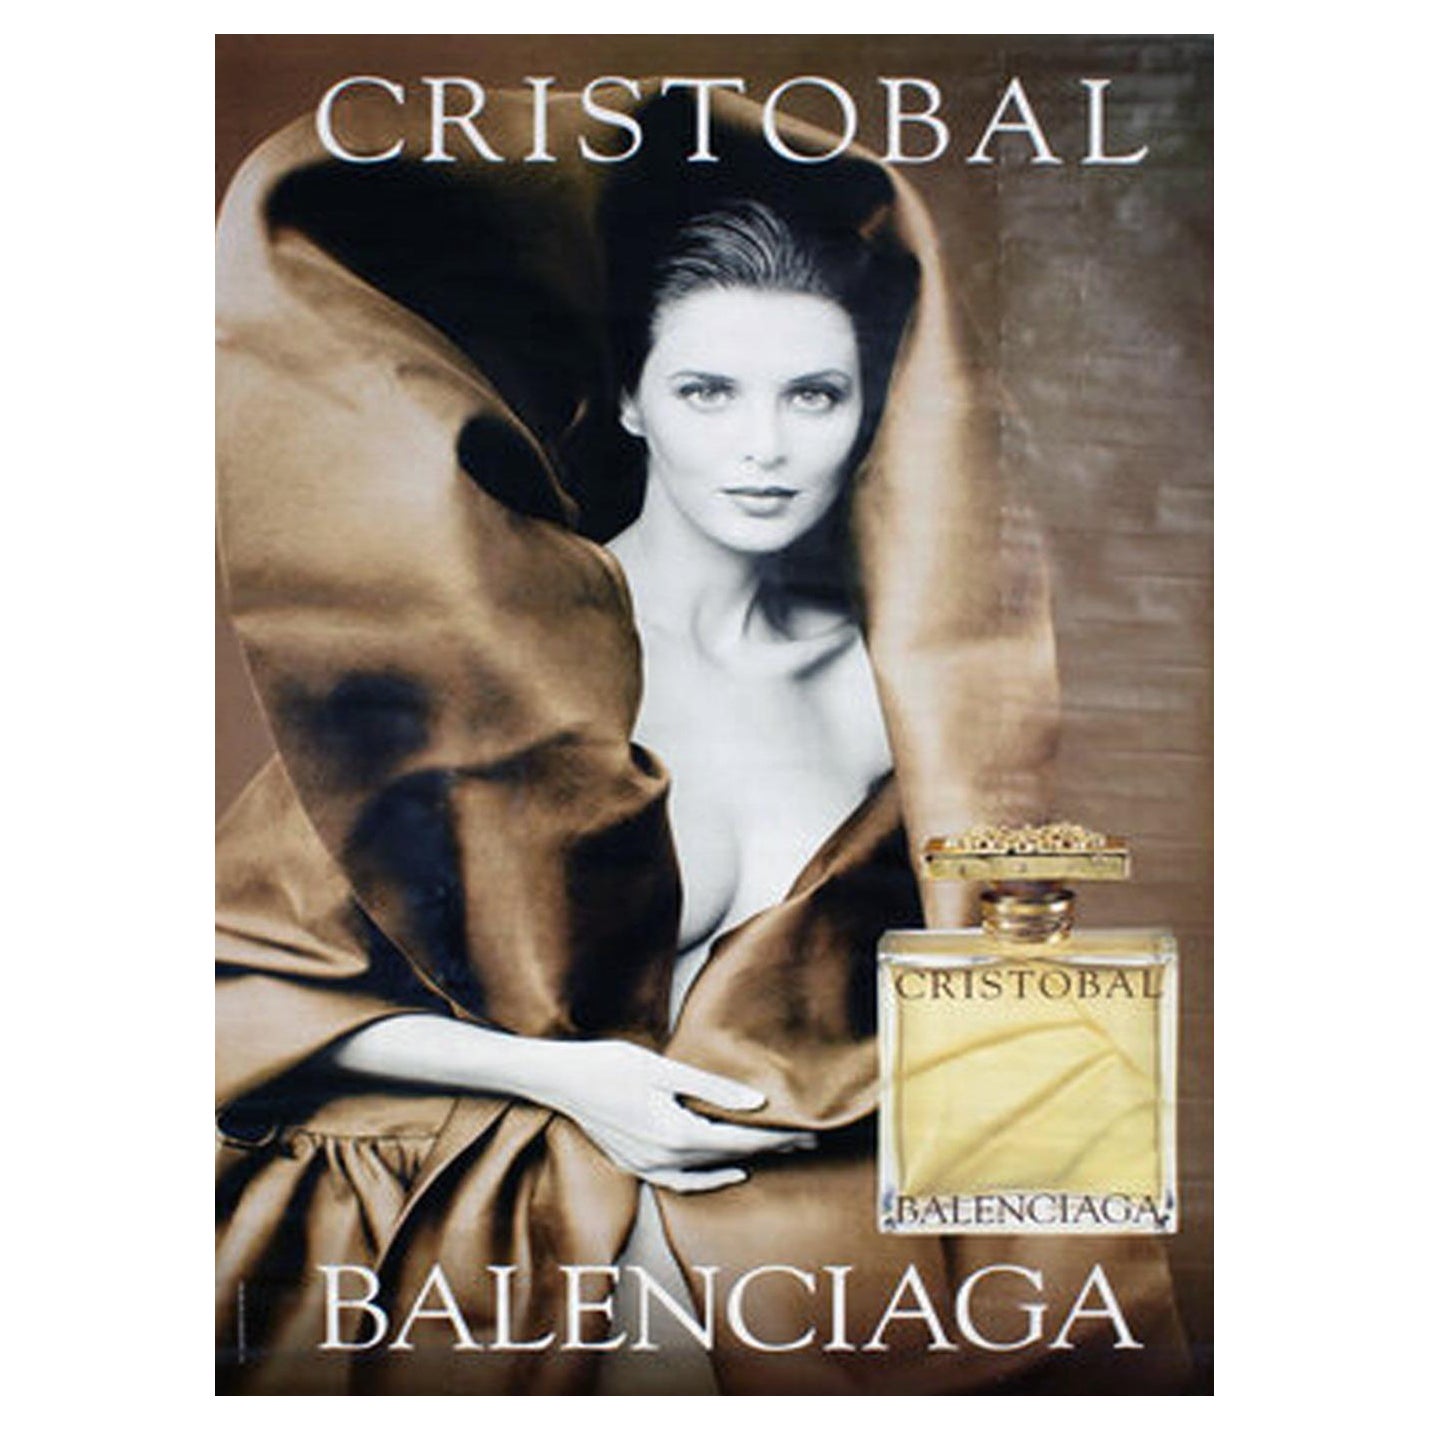 1999 Balenciaga - Cristobal Original Vintage Poster